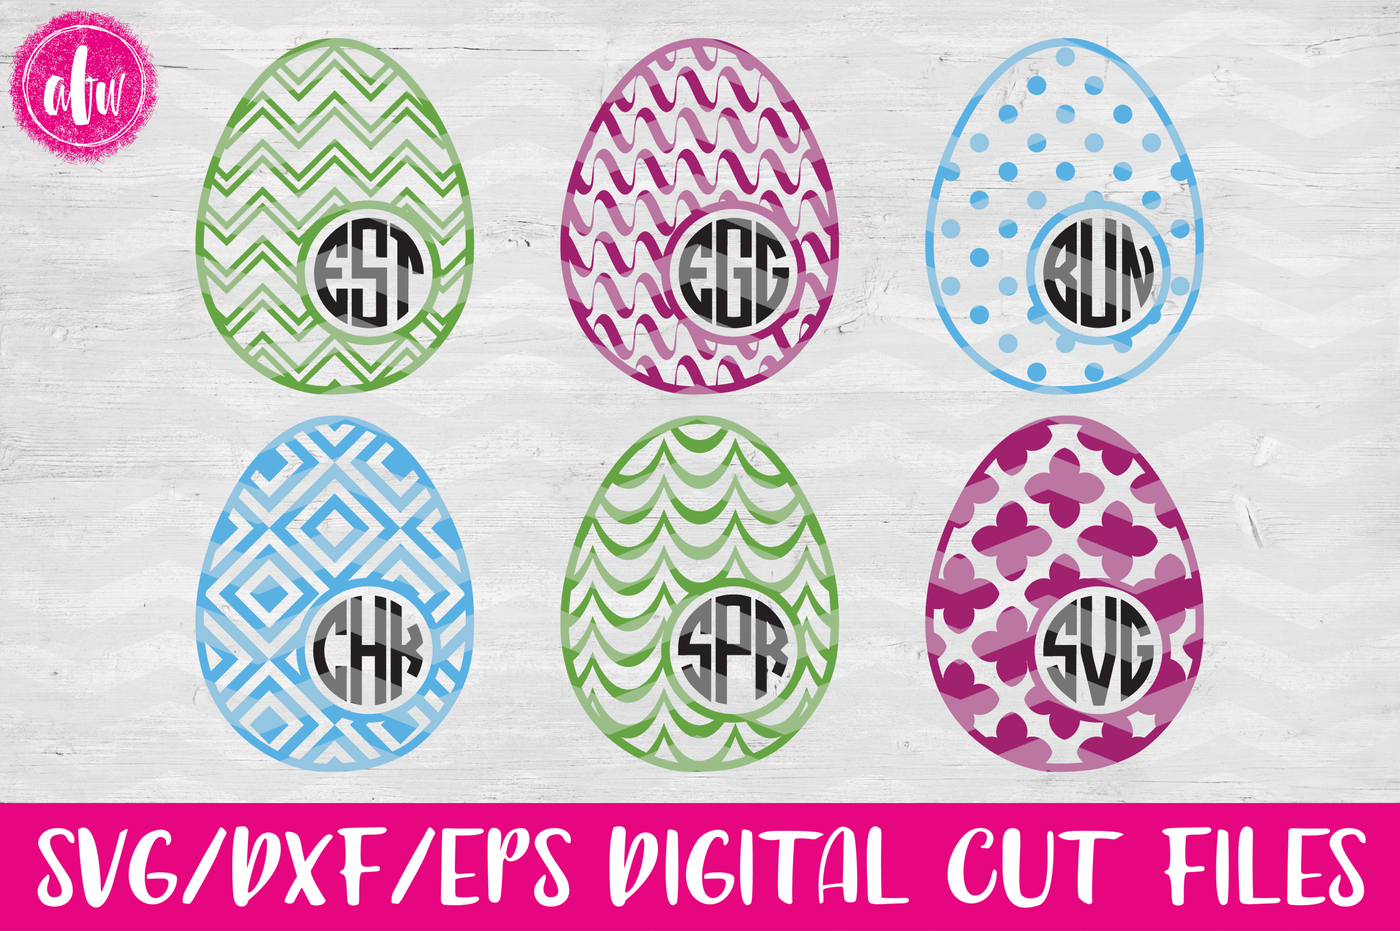 Download Patterned Monogram Easter Eggs Set #2 - SVG, DXF, EPS Cut ...